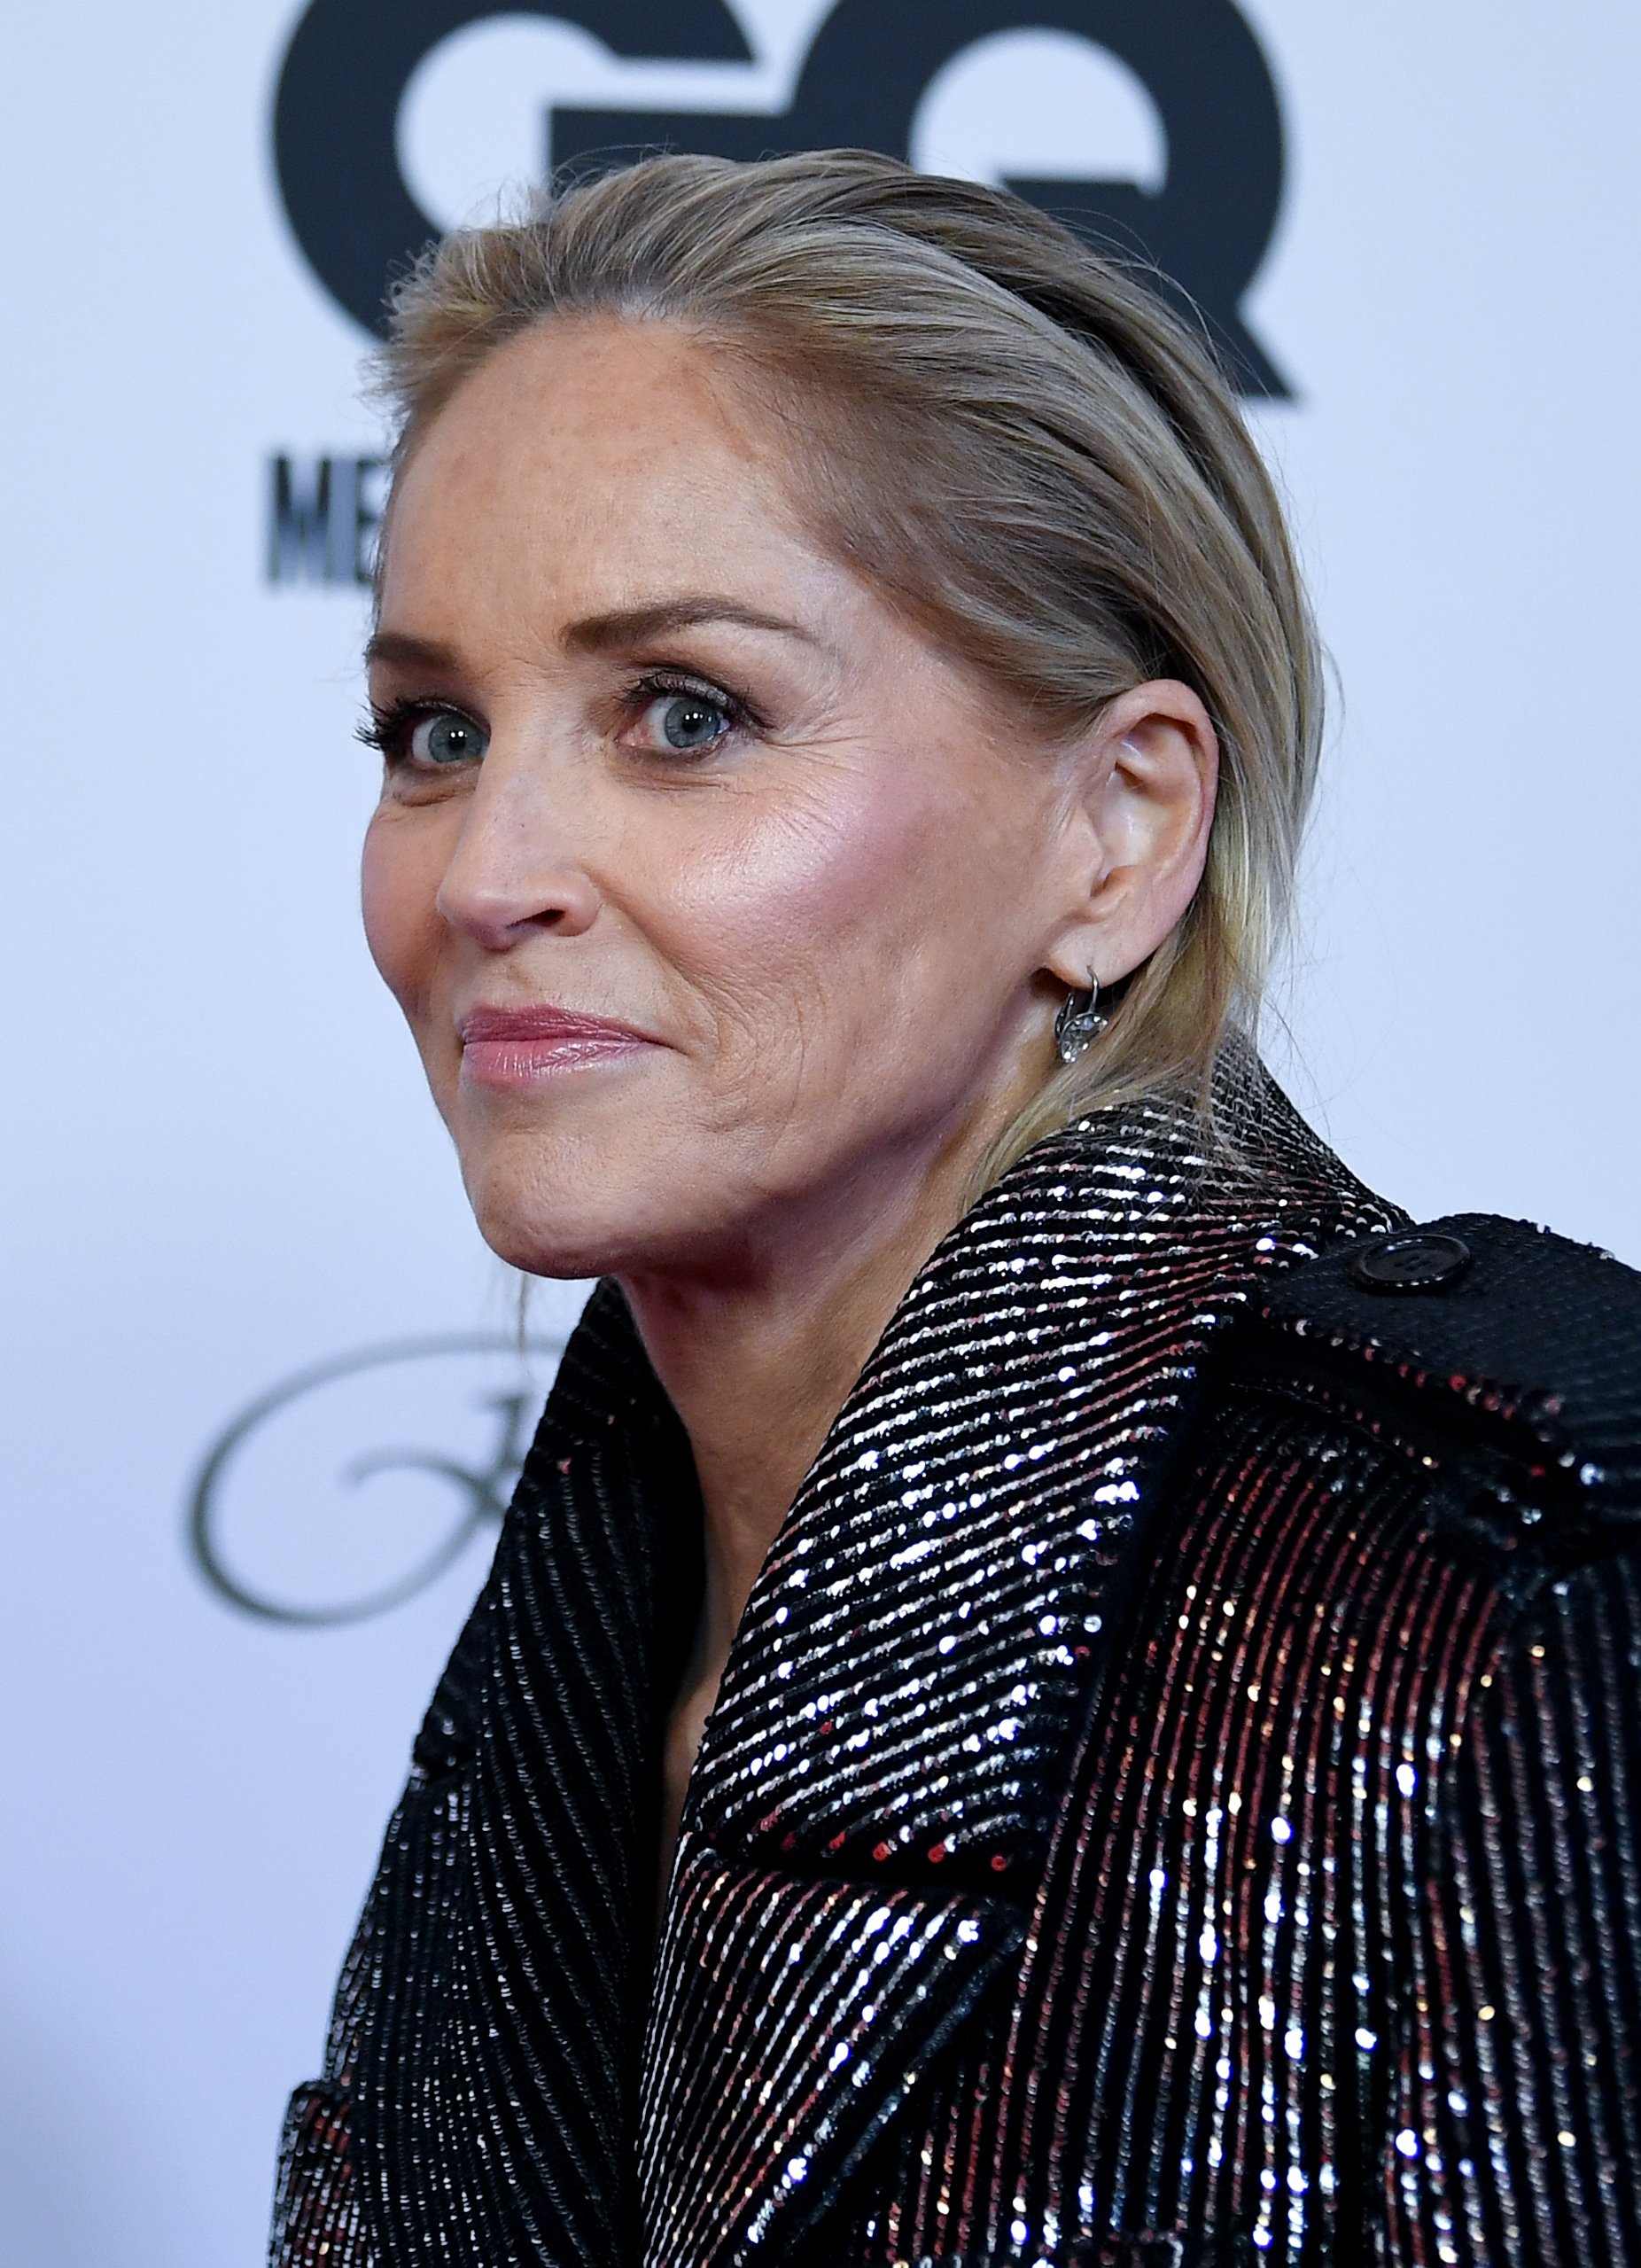 Sharon Stone, US-amerikanische Schauspielerin, kommt zu den "GQ Men of the Year Awards" im November 2019 nach Berlin | Quelle: Getty Images